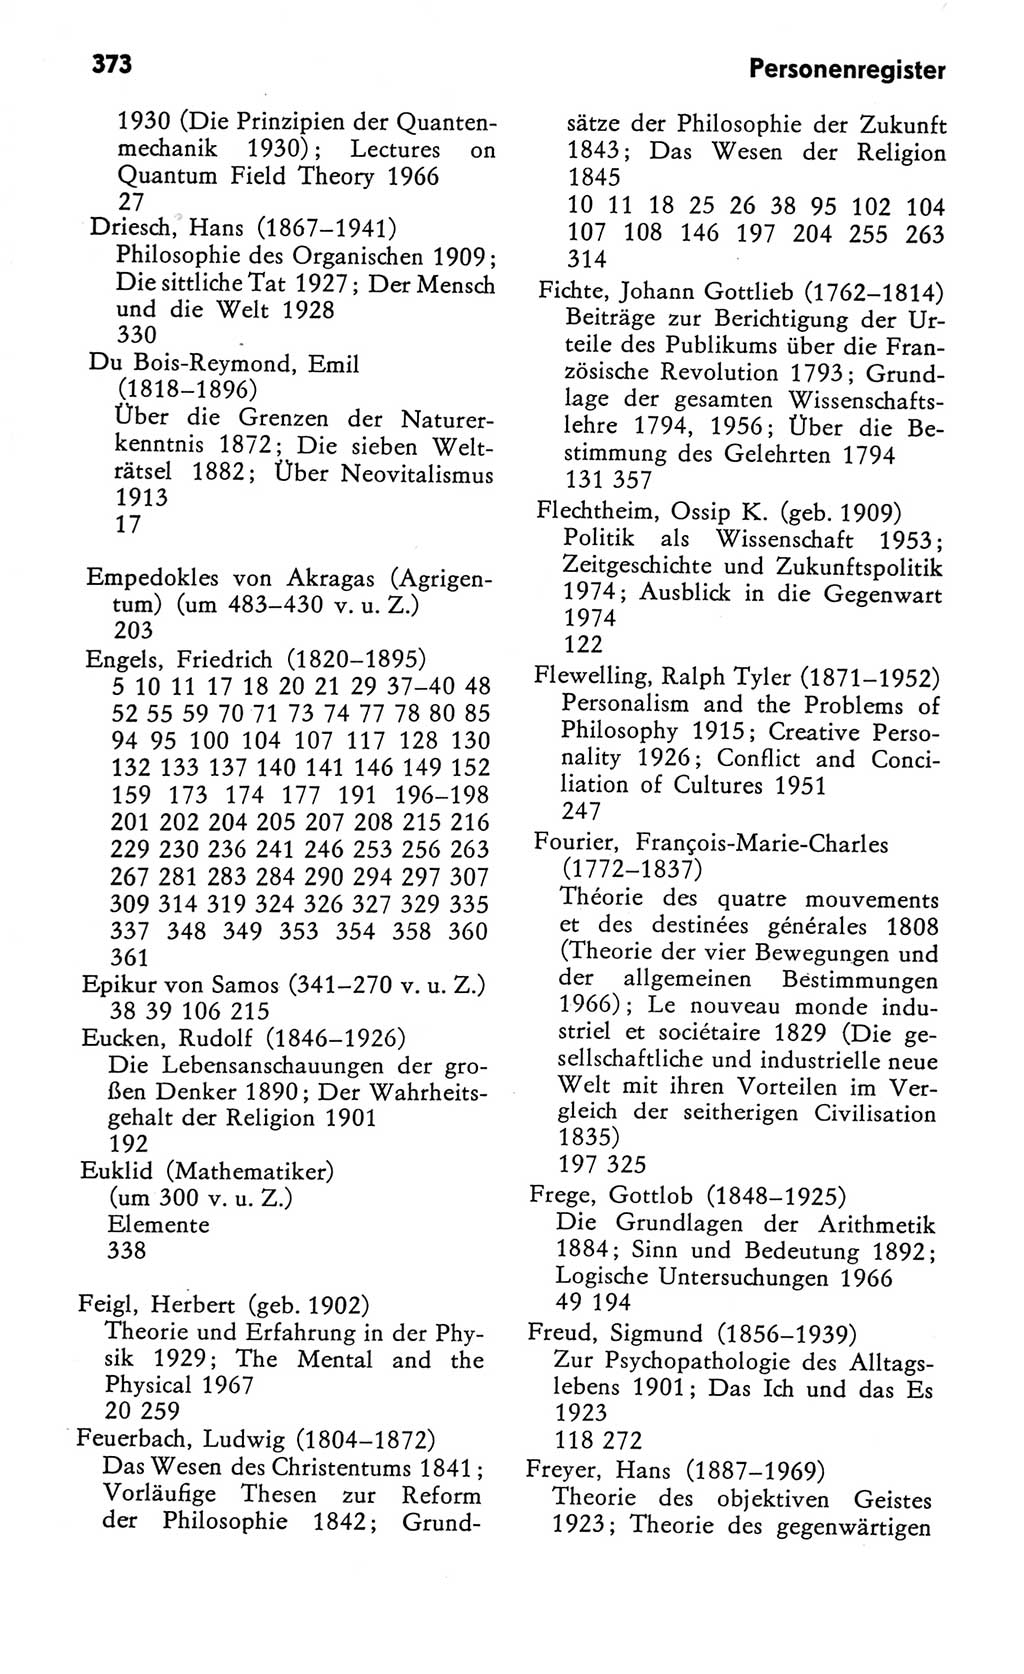 Kleines Wörterbuch der marxistisch-leninistischen Philosophie [Deutsche Demokratische Republik (DDR)] 1982, Seite 373 (Kl. Wb. ML Phil. DDR 1982, S. 373)